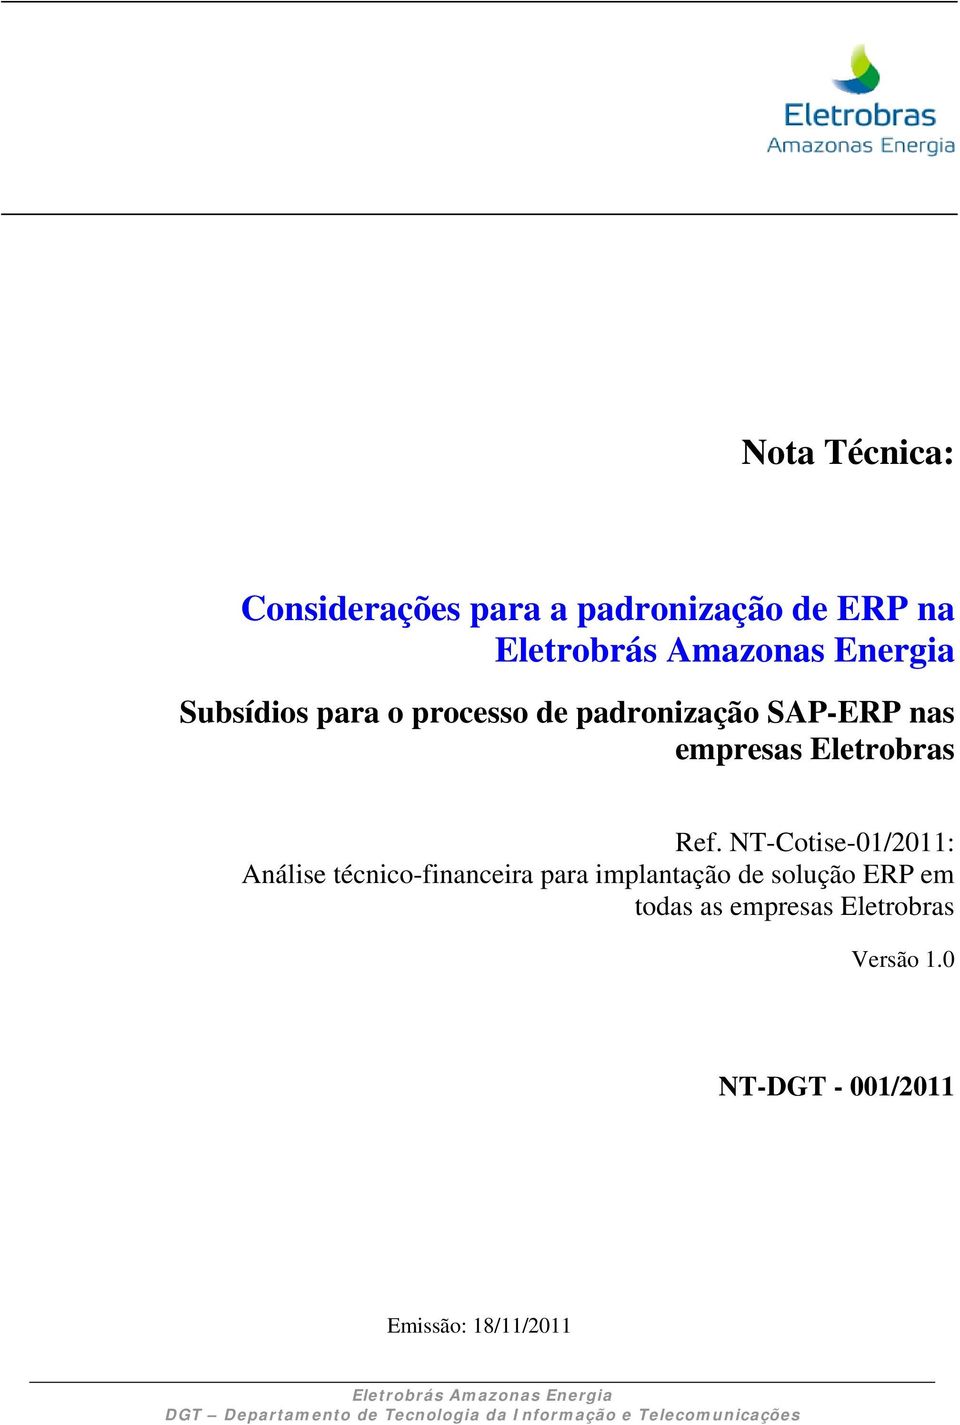 NT-Cotise-01/2011: Análise técnico-financeira para implantação de solução ERP em todas as empresas